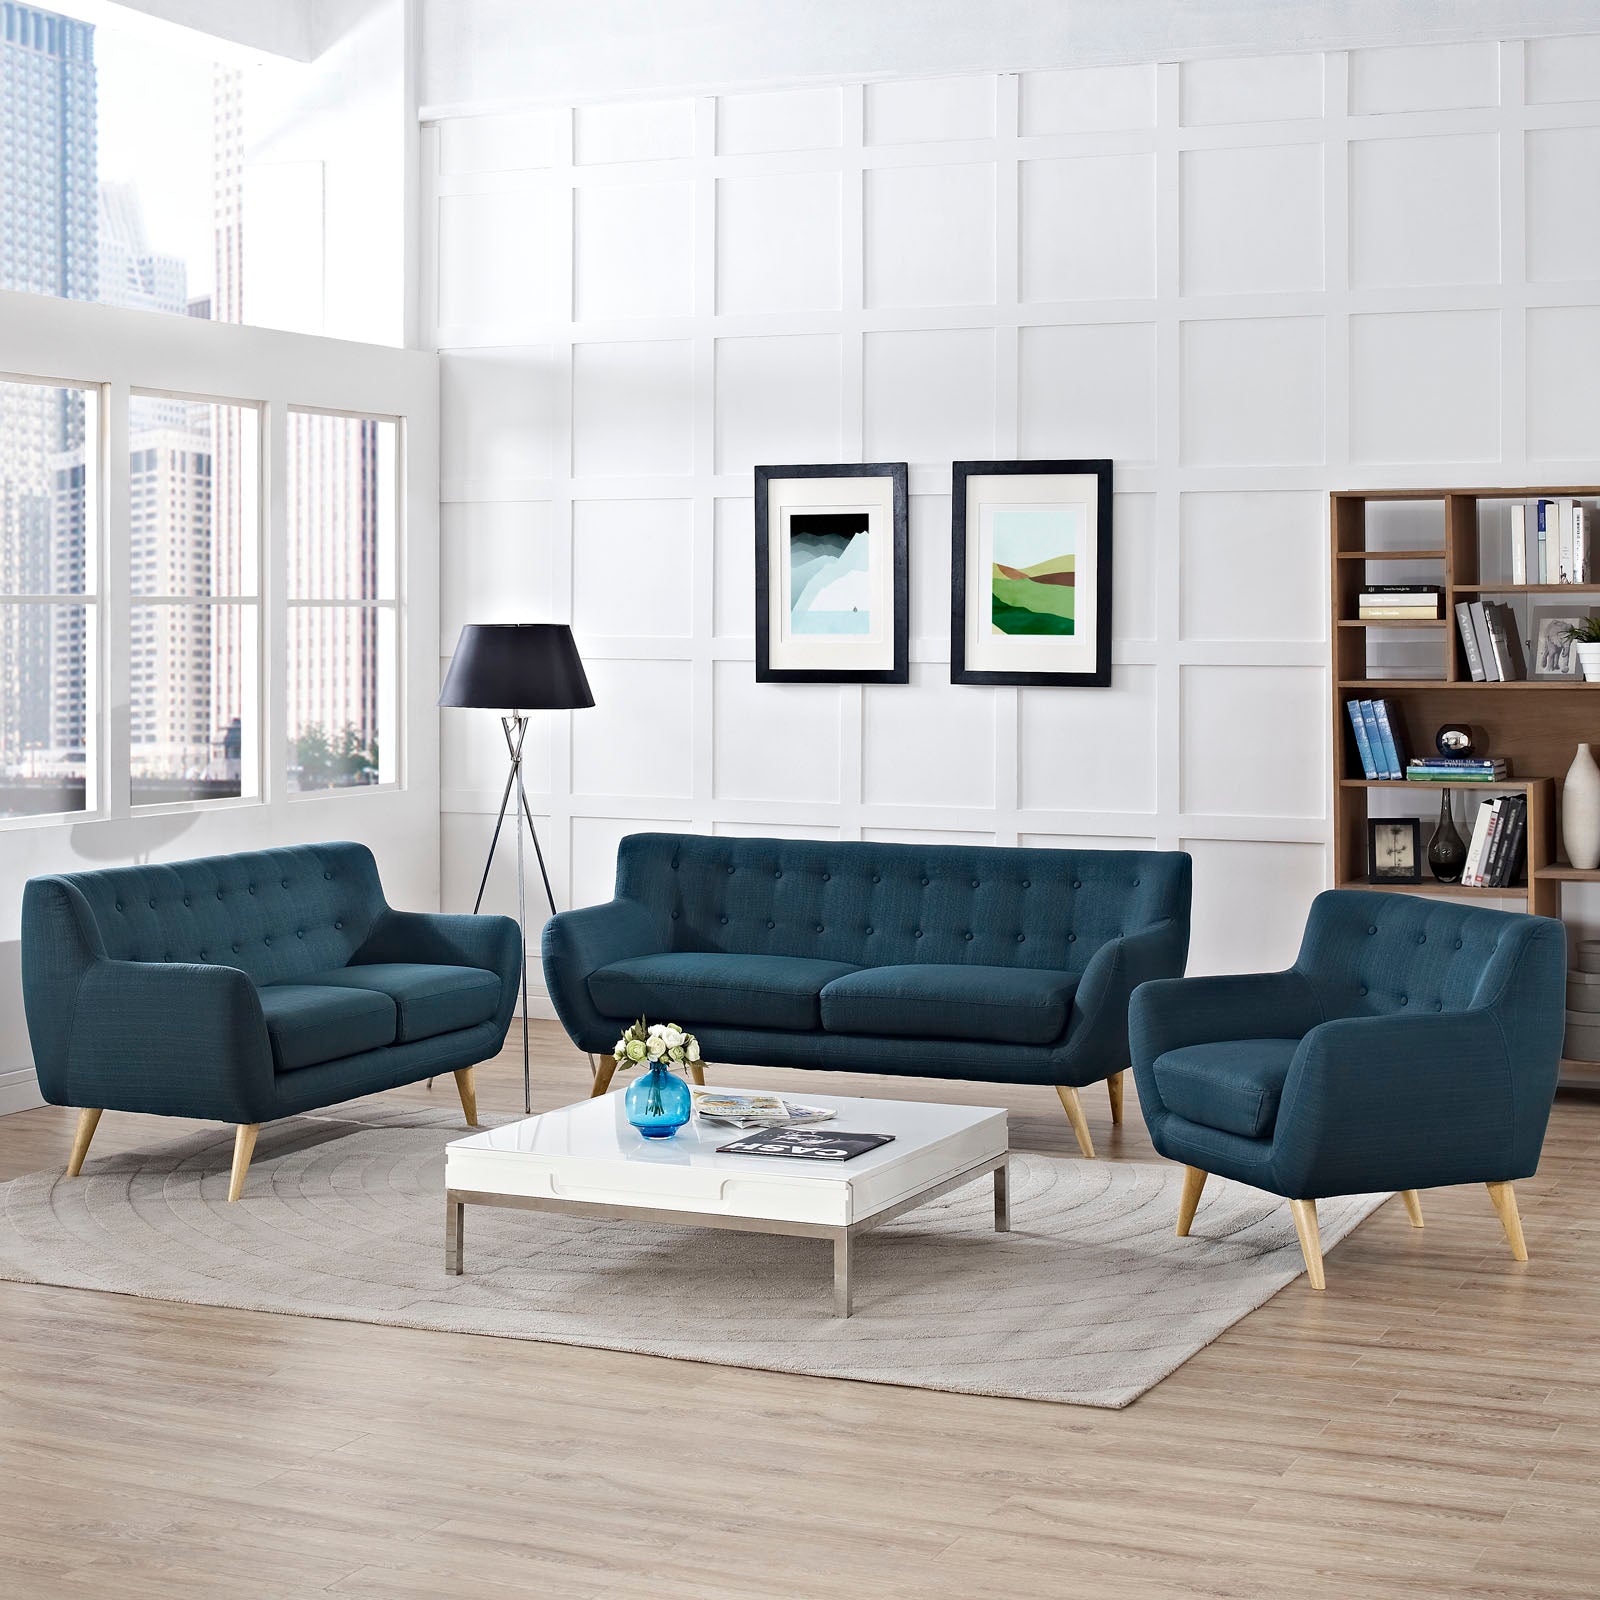 Modway Living Room Sets - Remark 3 Piece 170" W Living Room Set Azure